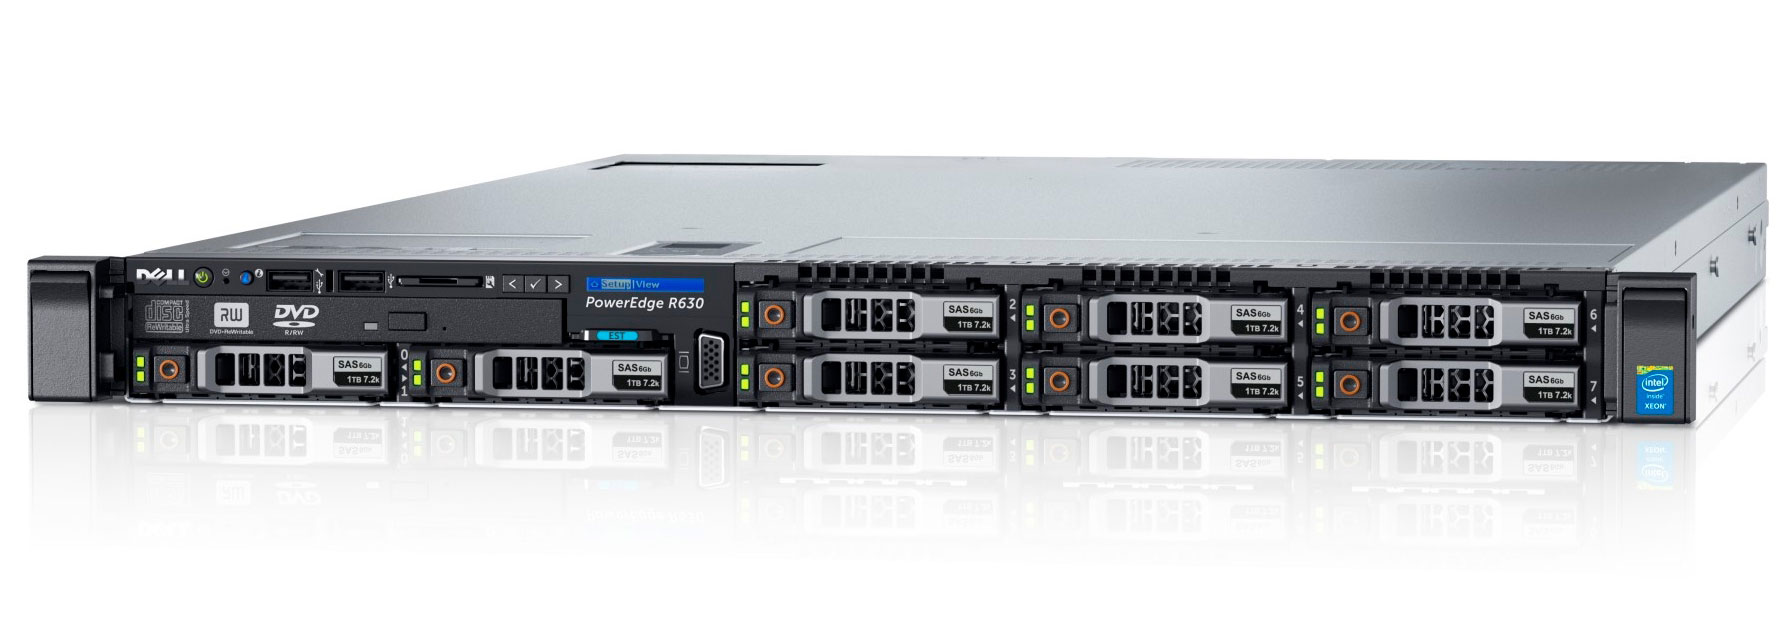 Подробное фото Сервер DELL PowerEdge R630 2*Xeon E5-2637v3 64Gb 2133P DDR4 8x noHDD 2.5" SAS RAID Perc H730, 2*PSU